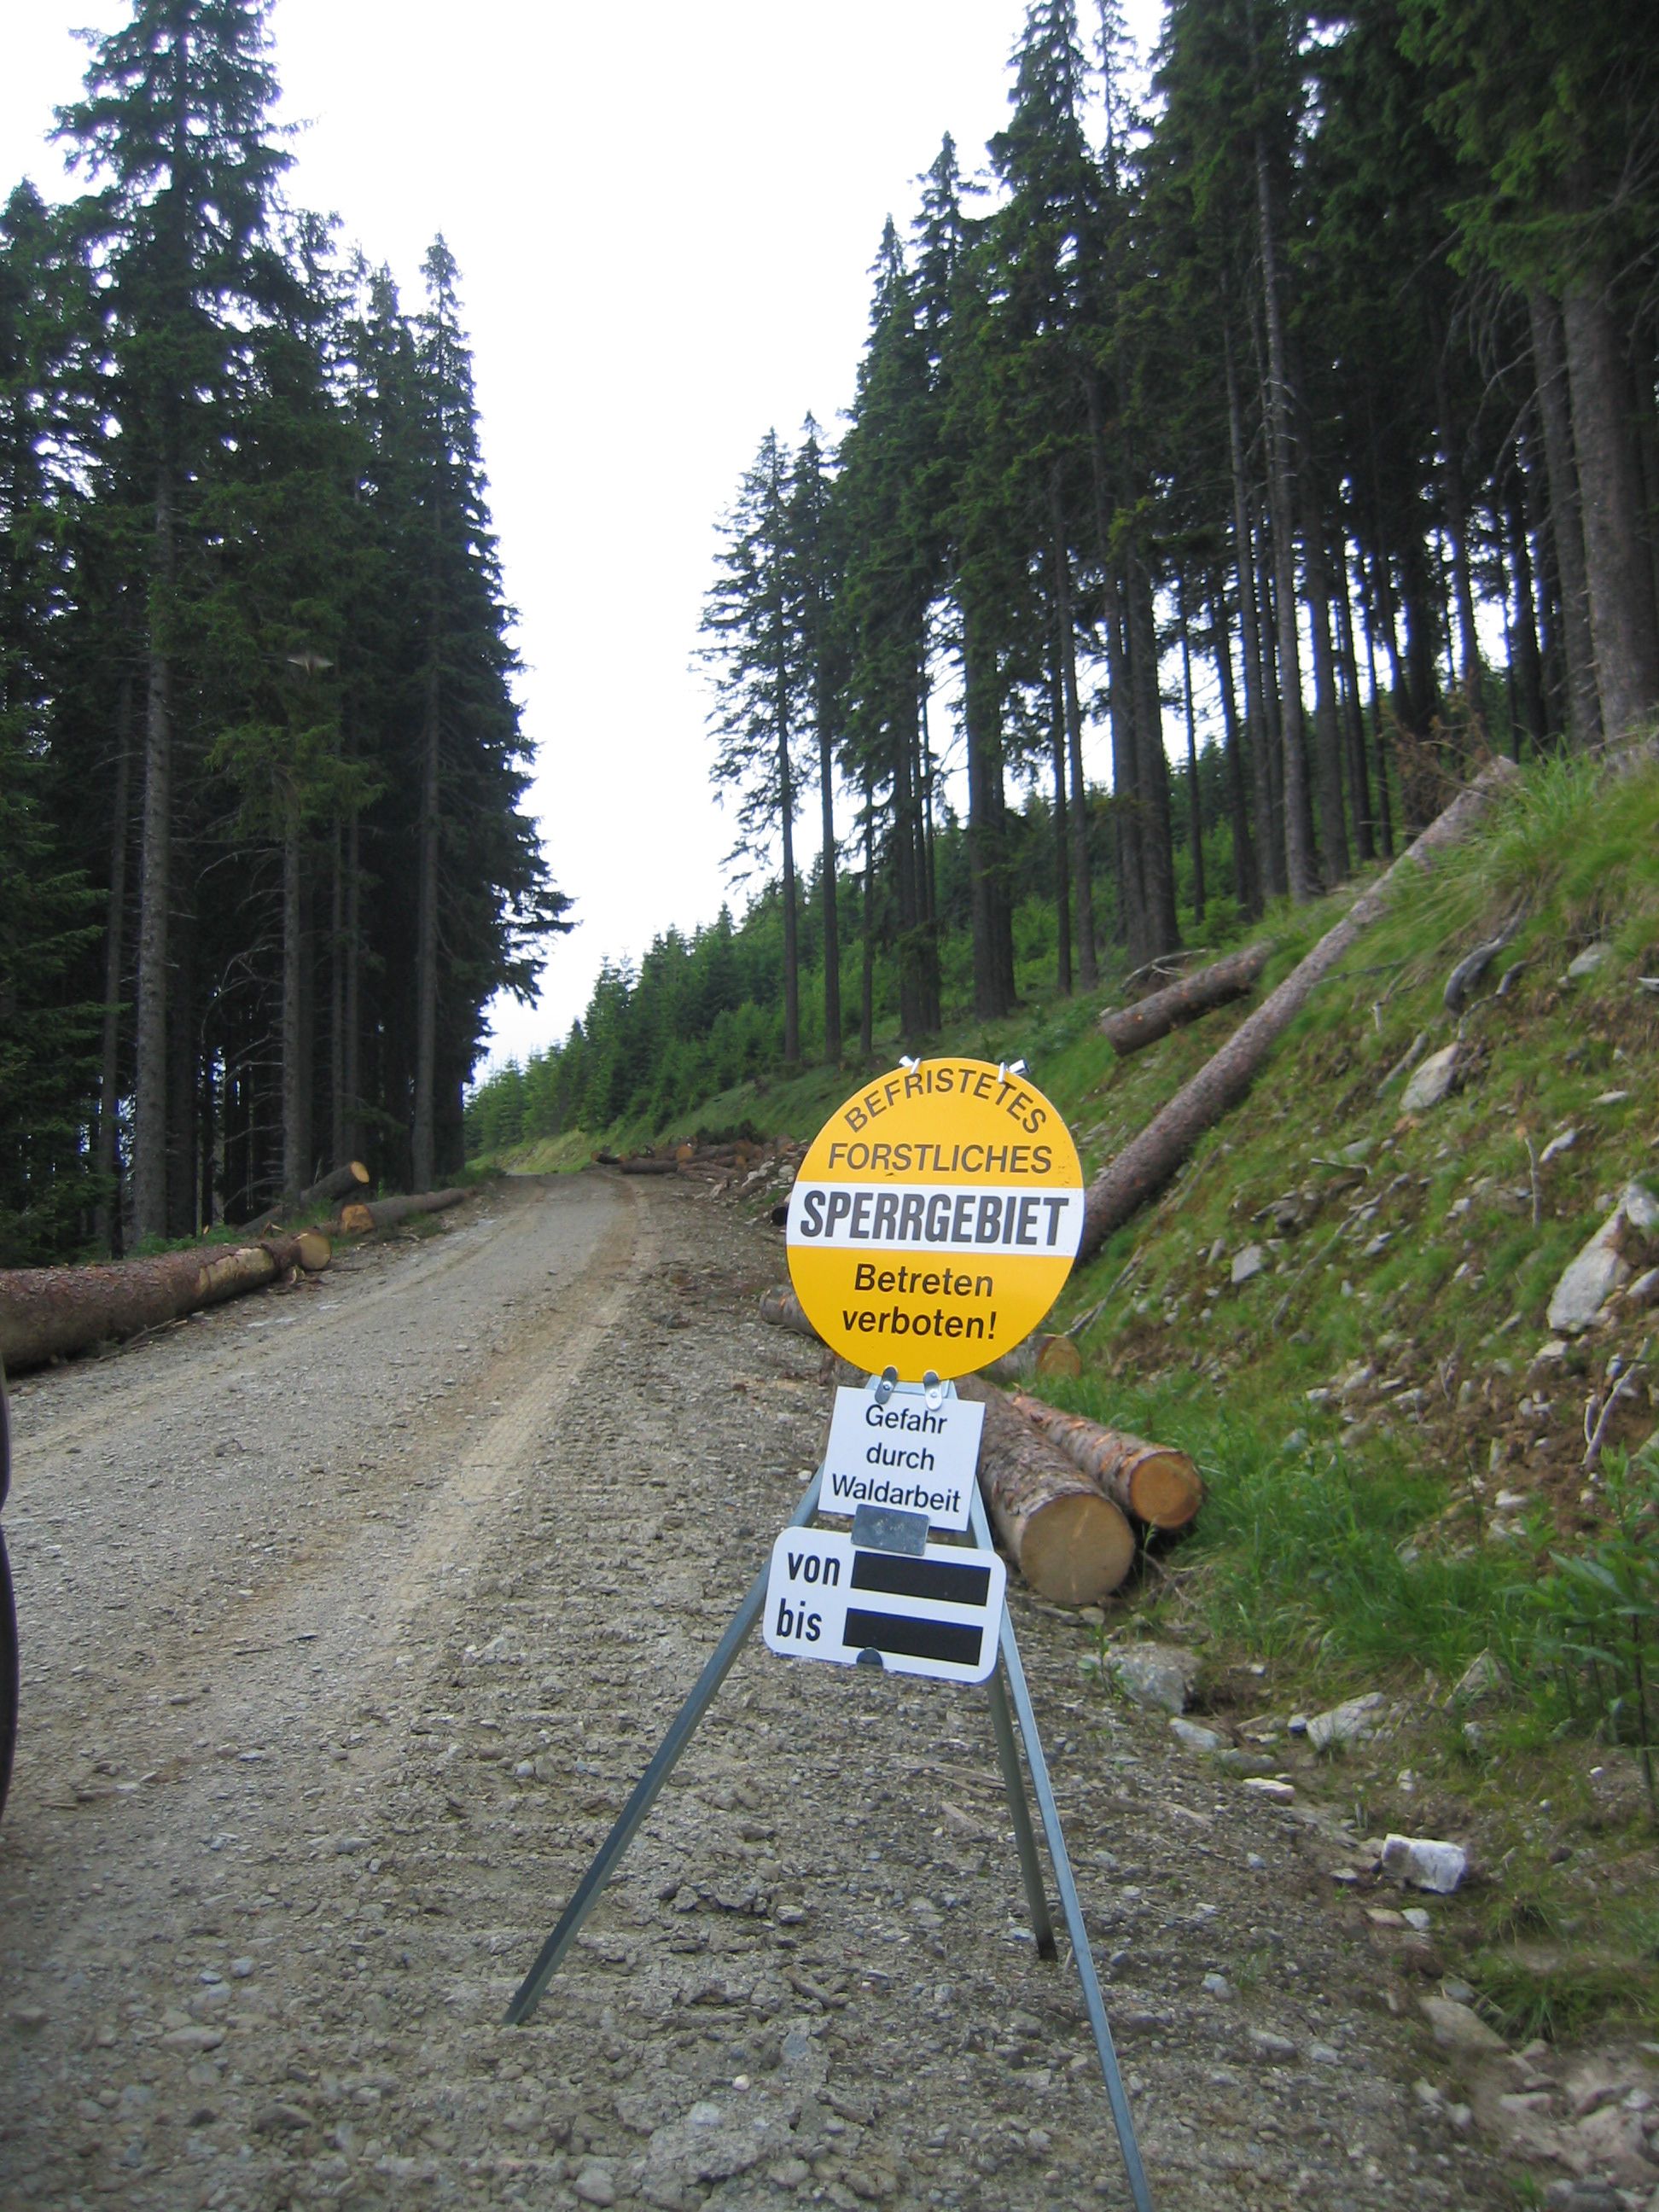 Bild einer Tafel mit dem ein befristetes Betreten des Waldes aufgestellt ist, Gefahr durch Waldarbeit.